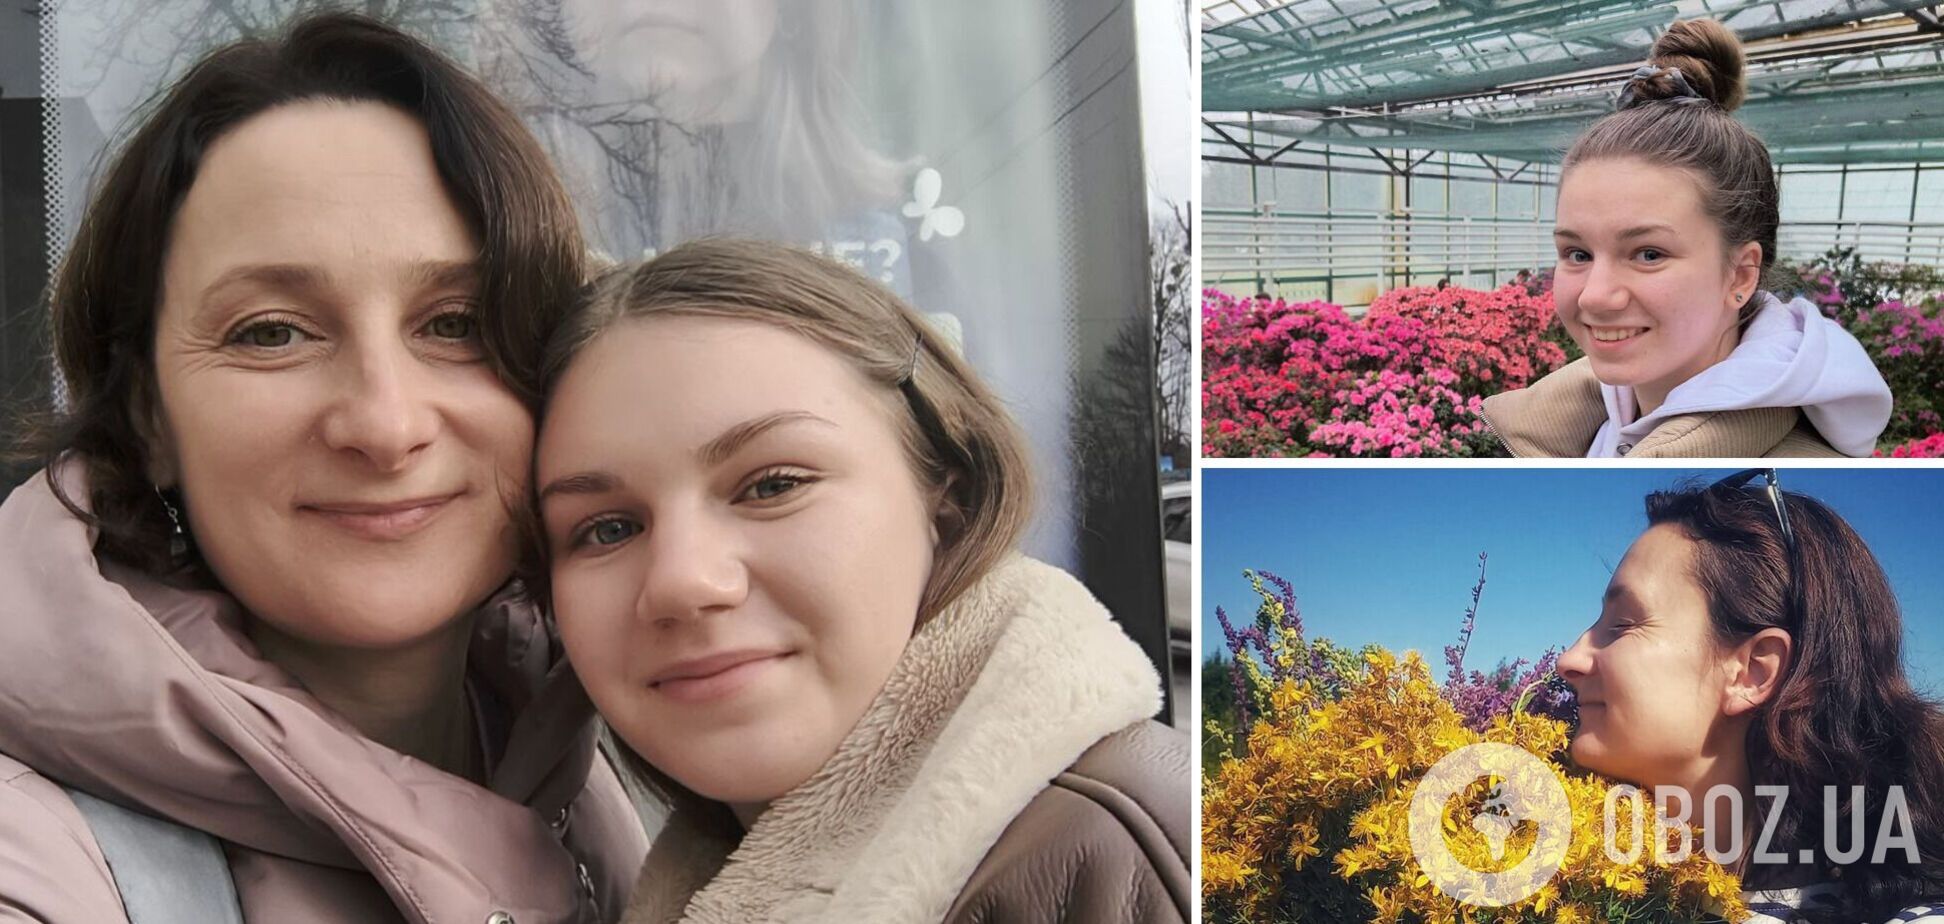 Ее депортировали россияне, а она сбежала в Украину. Невероятная история Валерии и Ольги, установившей опеку над 17-летней сиротой